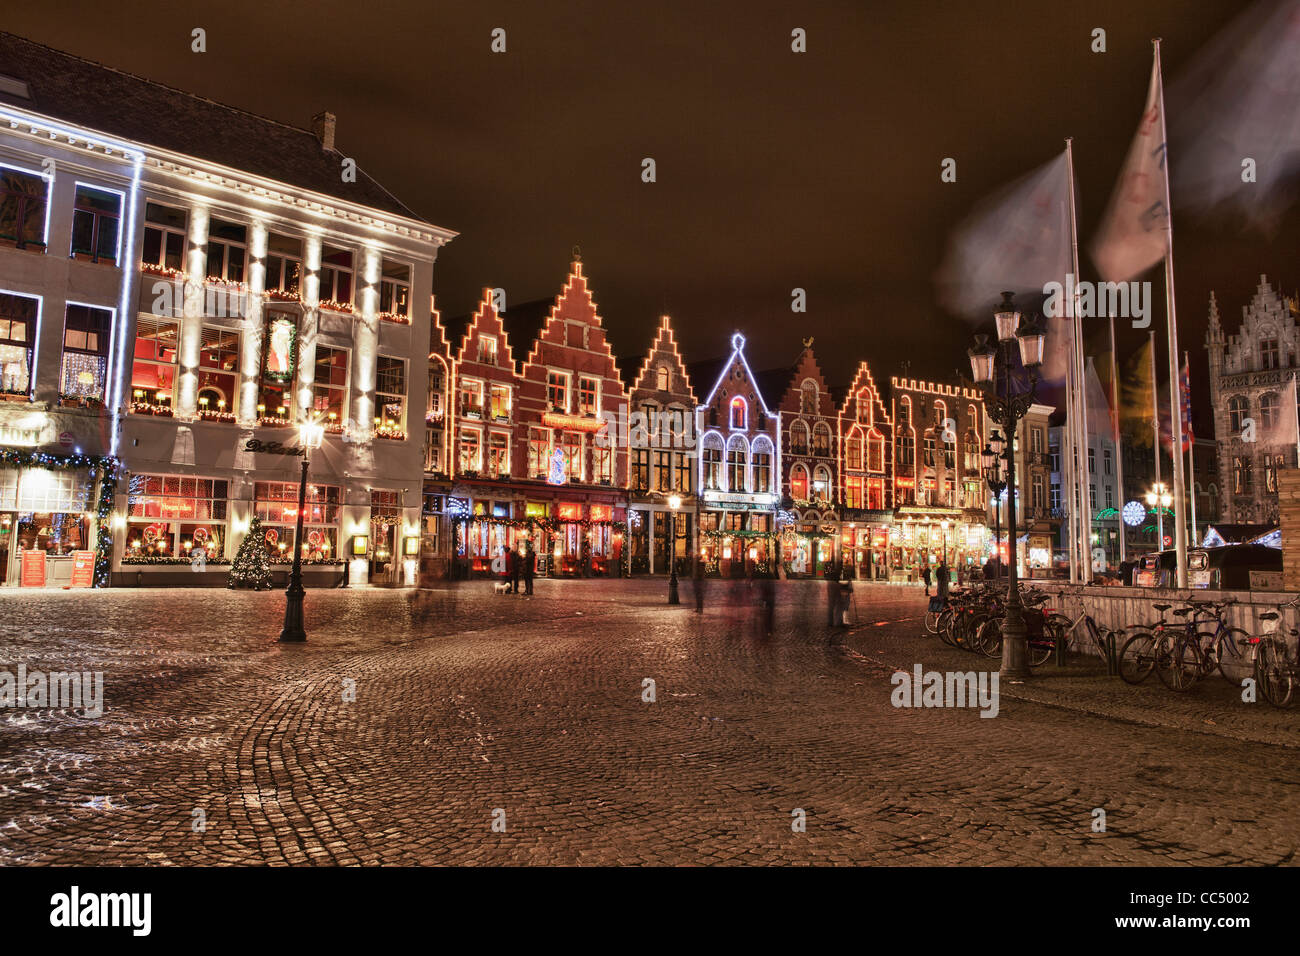 Centre-ville de Brugge (Bruges) en Belgique avec décoration de Noël. Photo de nuit avec des lumières. Banque D'Images